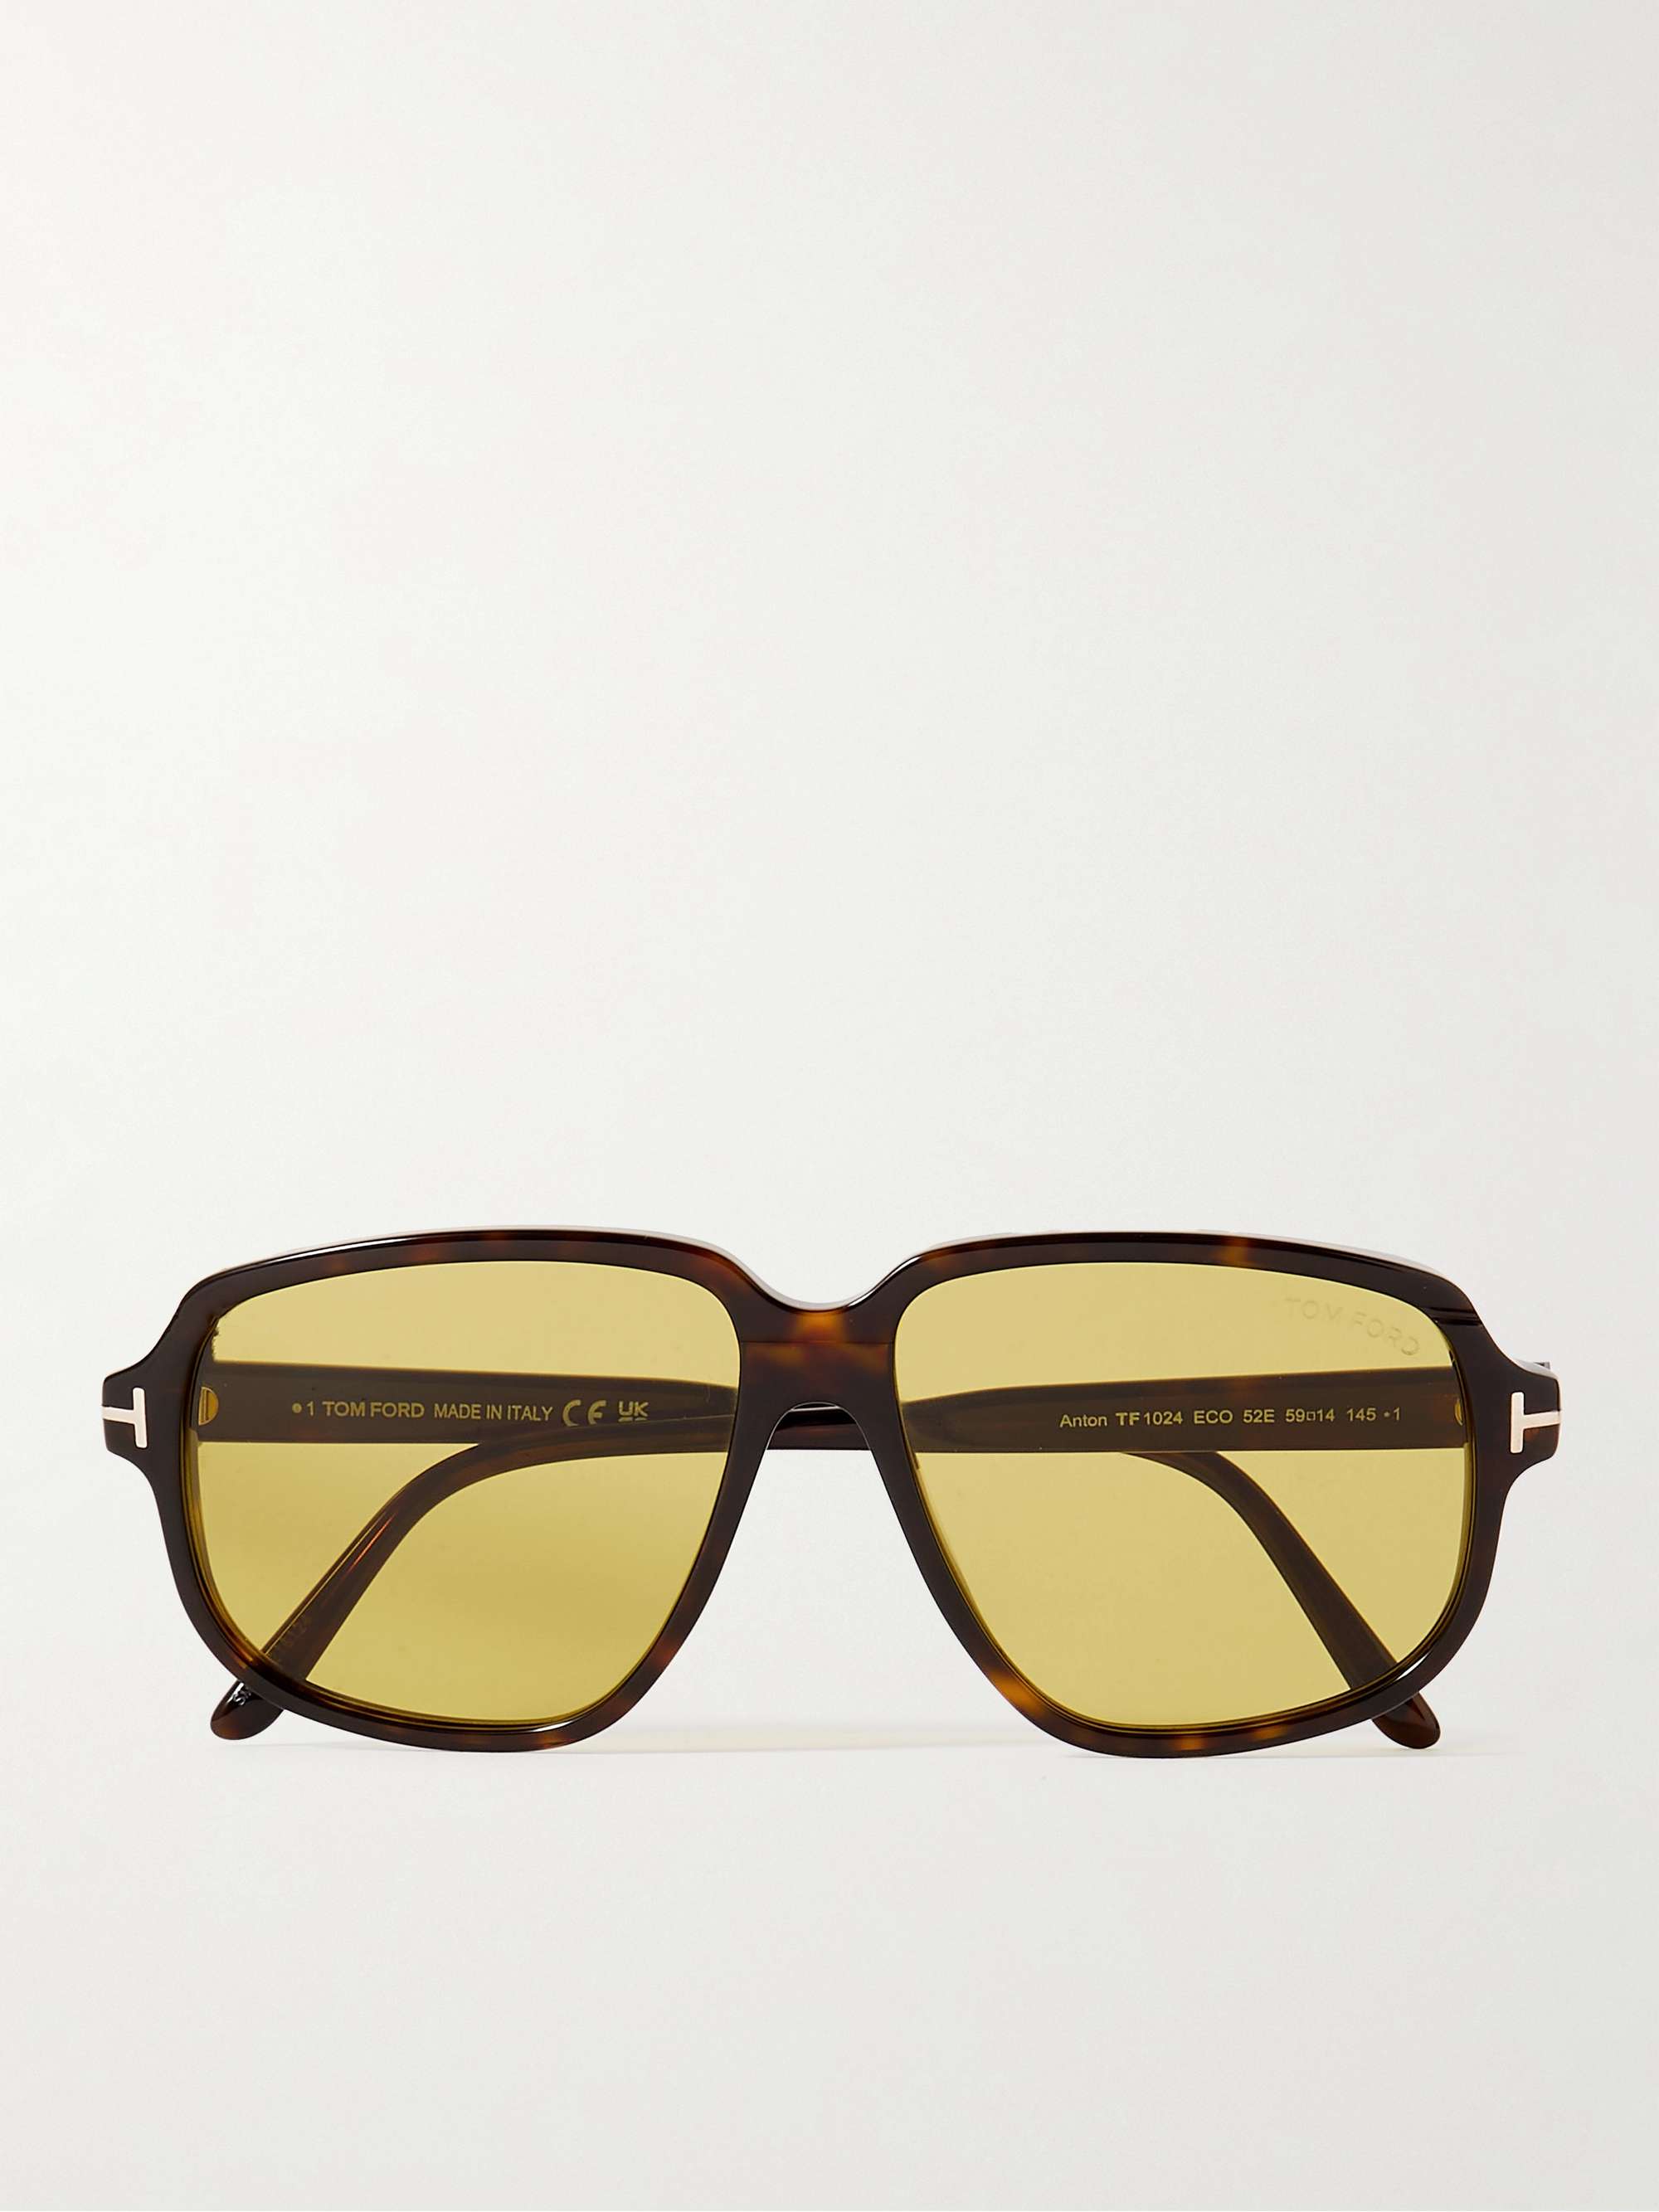 TOM FORD EYEWEAR D-Frame Tortoiseshell Acetate Sunglasses